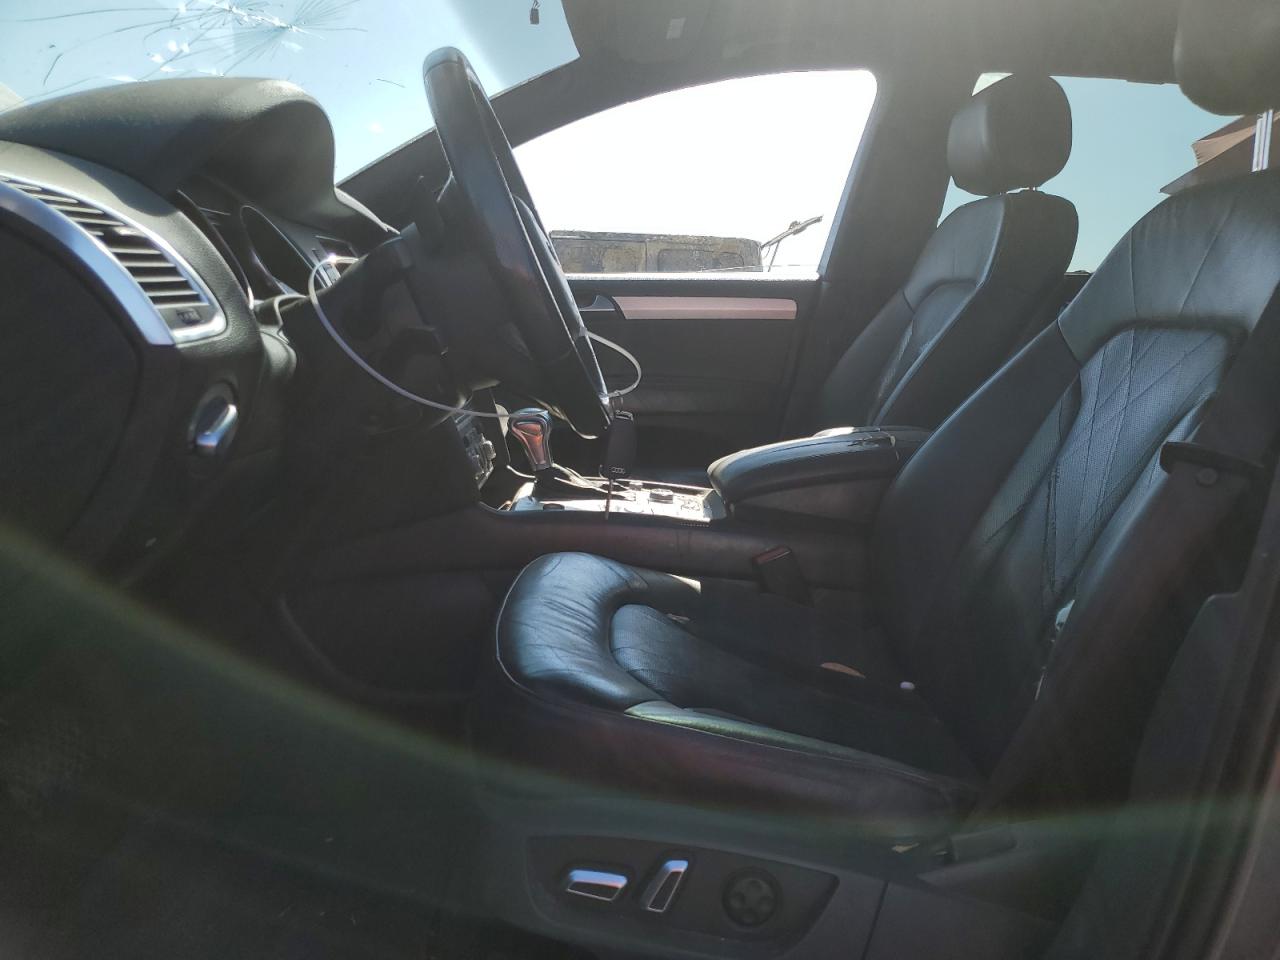 2015 Audi Q7 Prestige VIN: WA1DGAFE1FD007542 Lot: 65147654